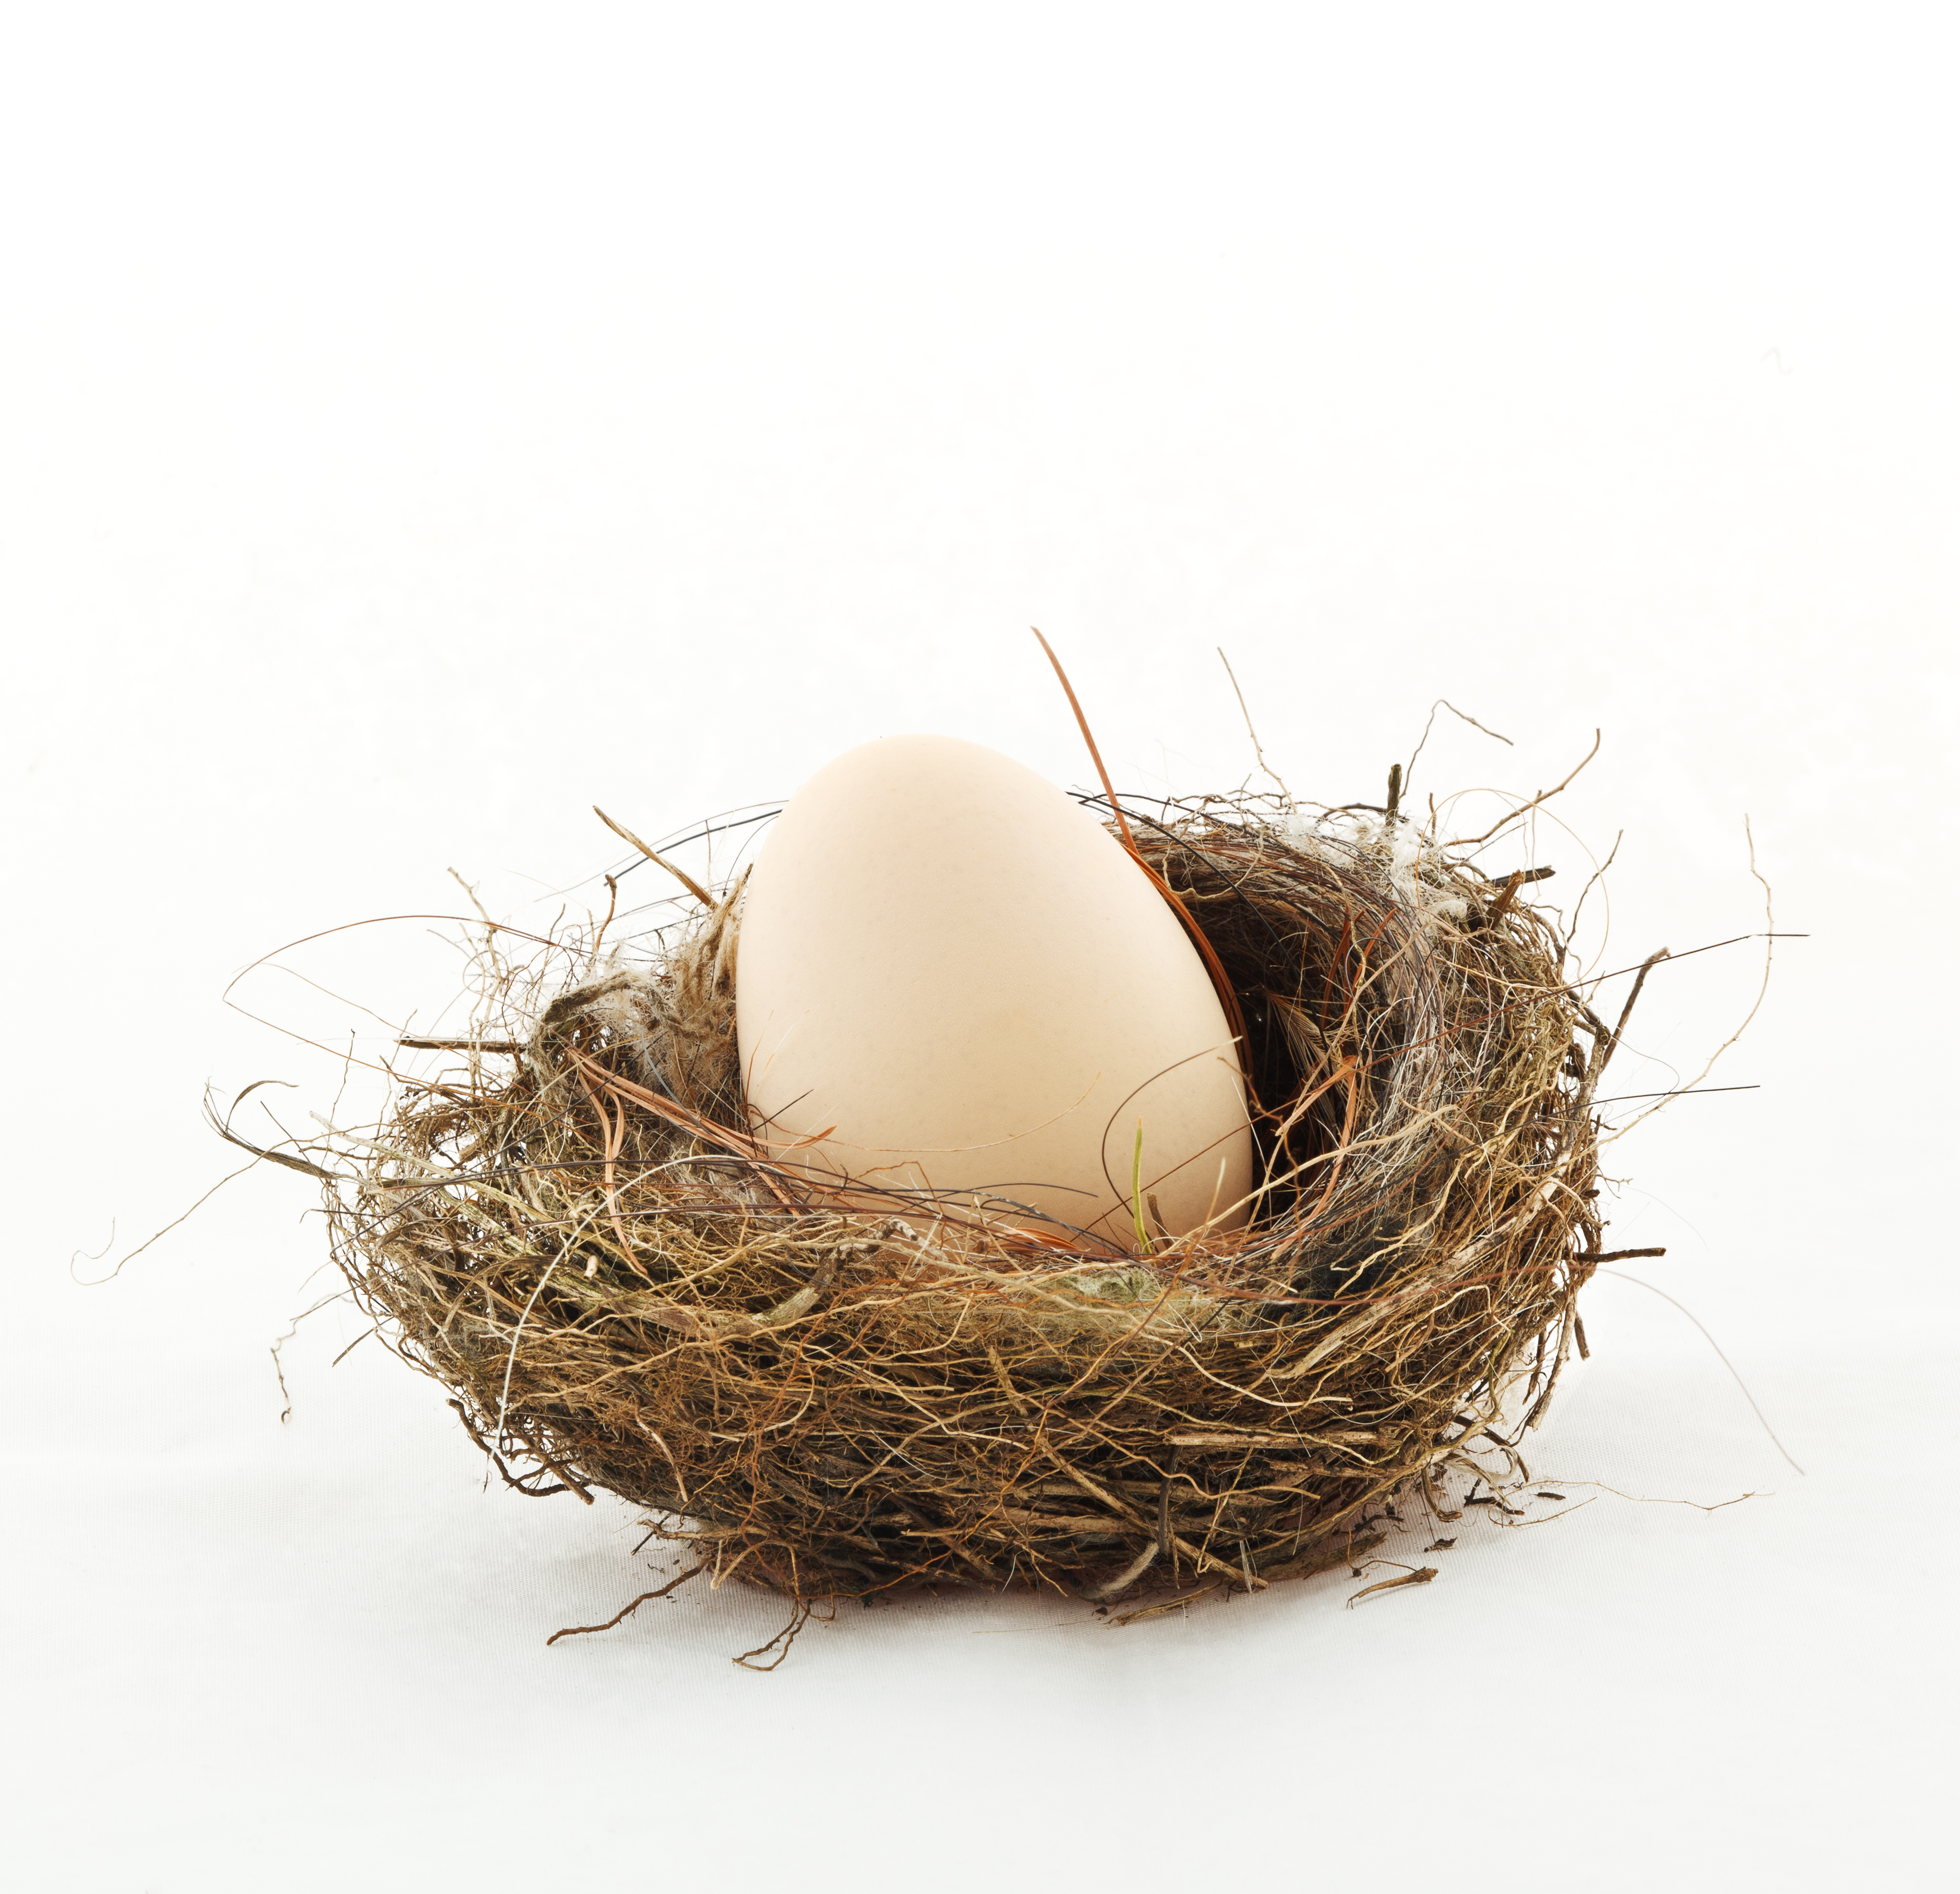 An egg in a nest | Source: Shutterstock